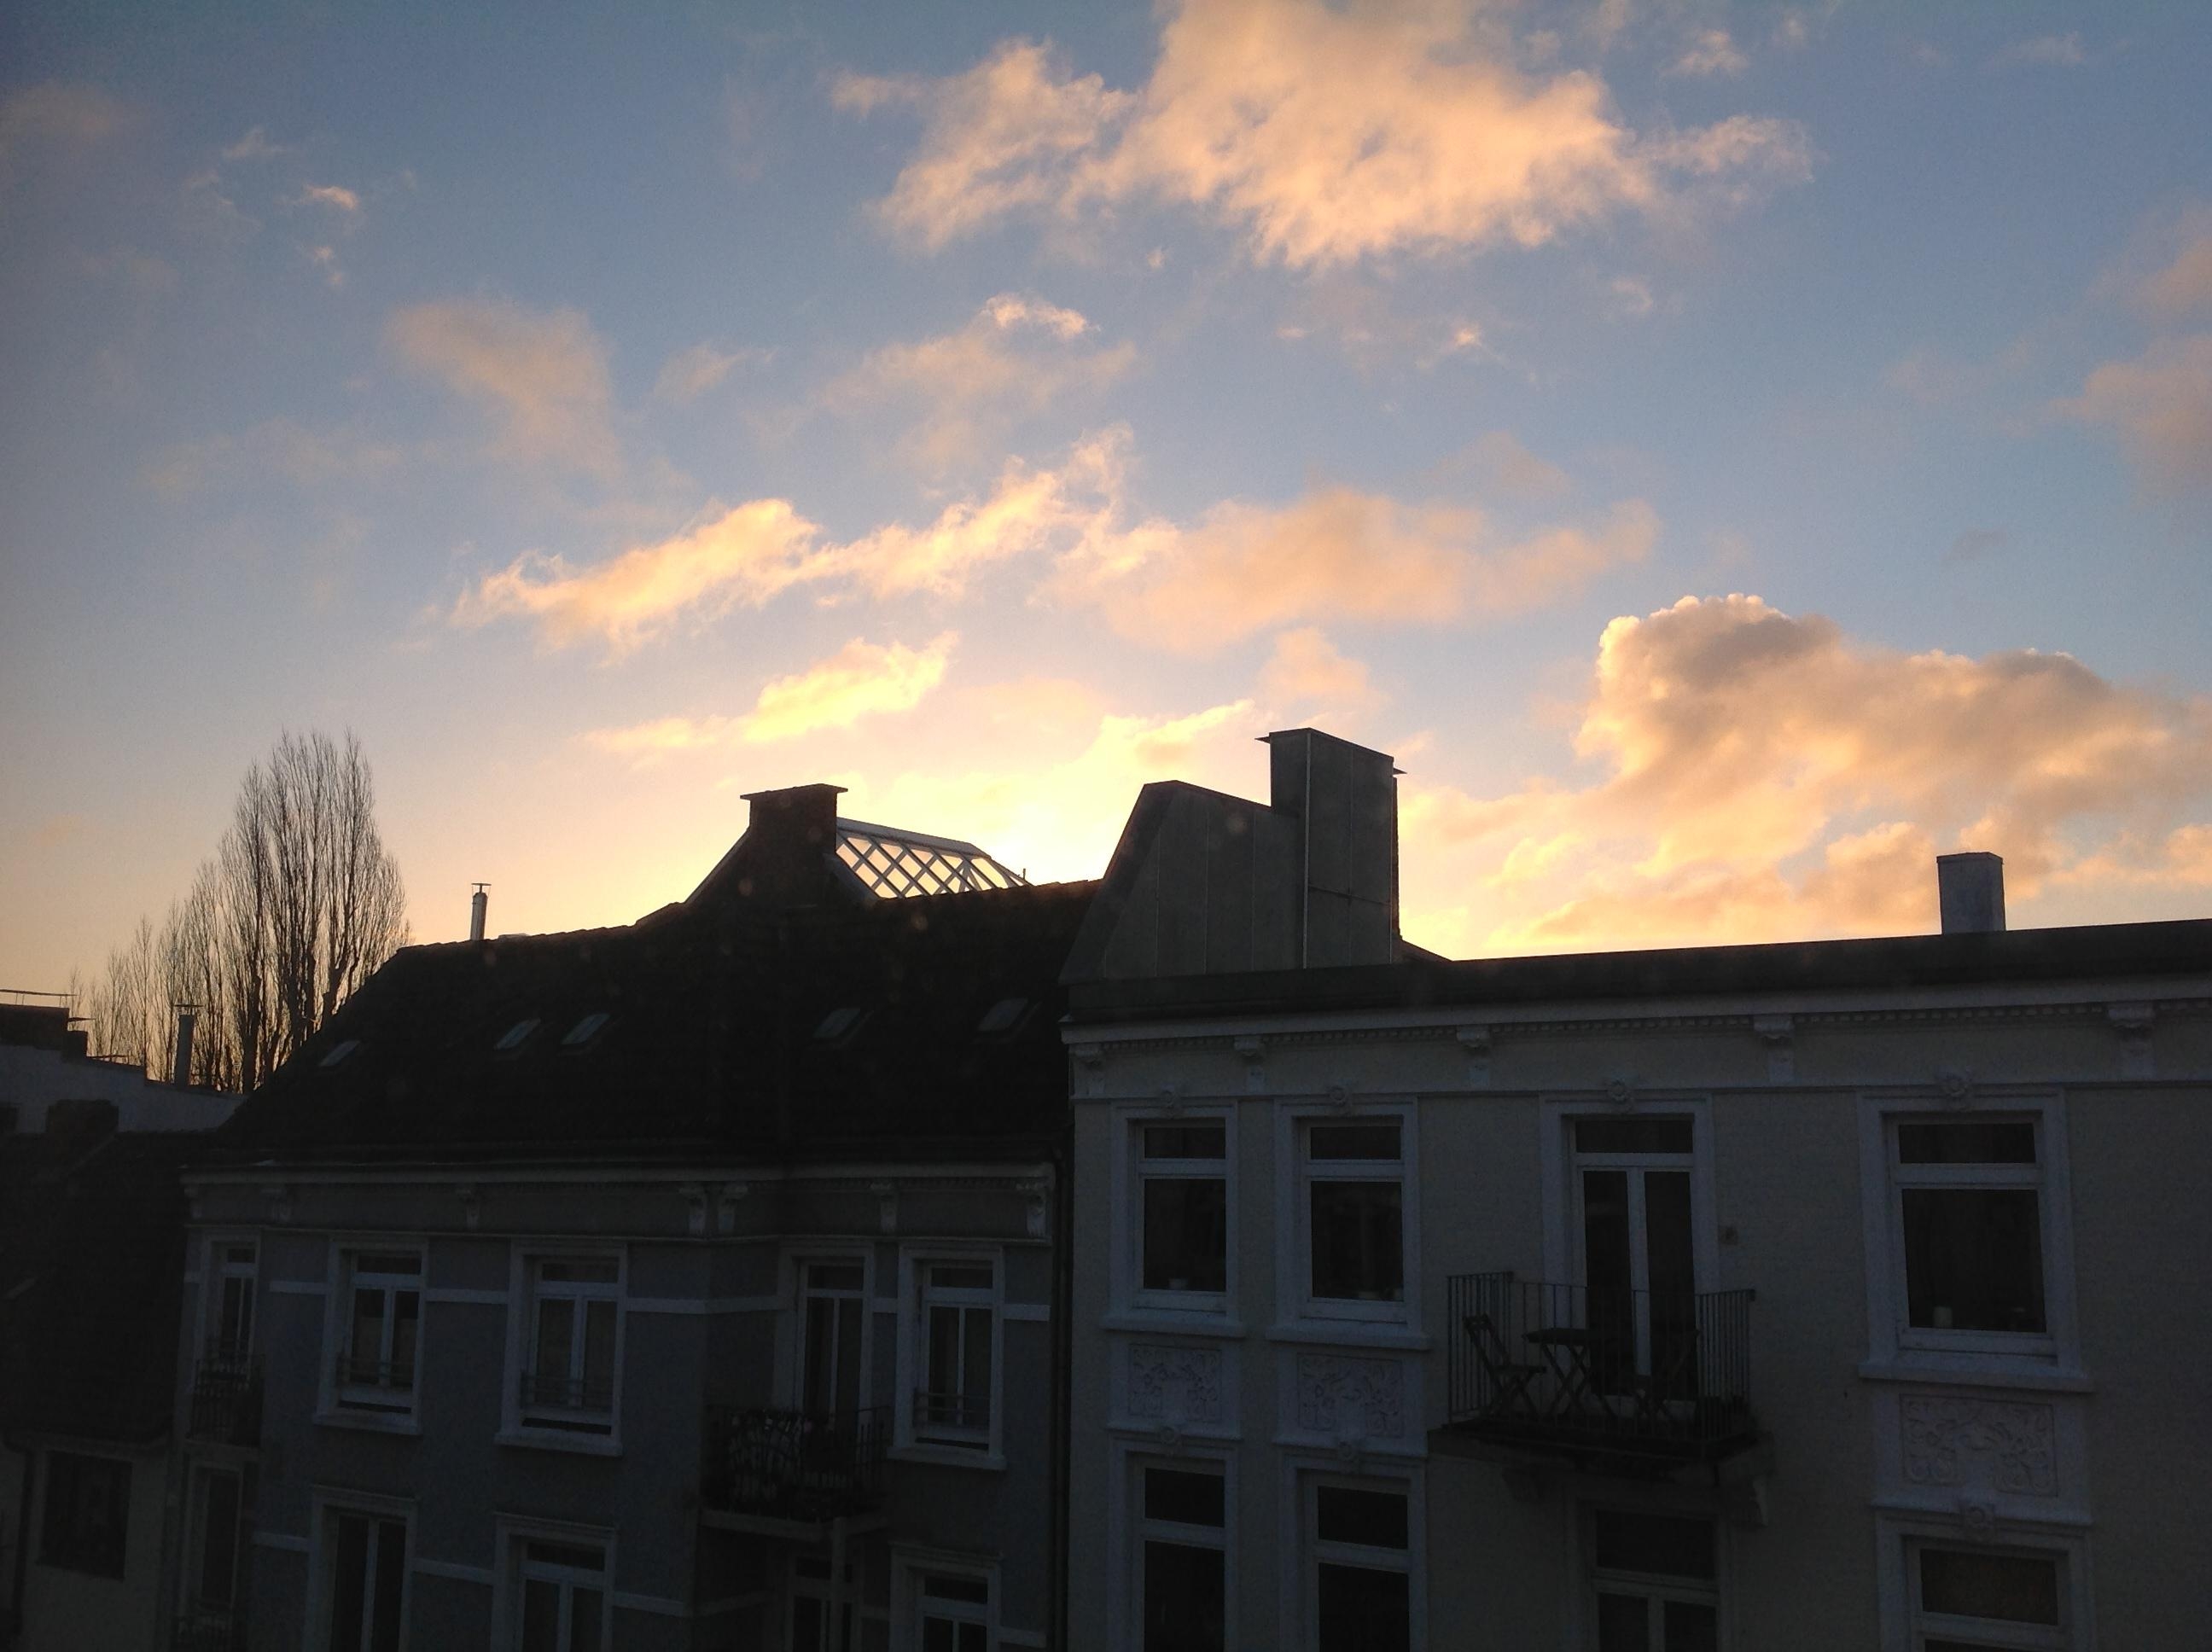 Himmel über Hamburg
#Abensonne#Himmelblick#WeiteSehen